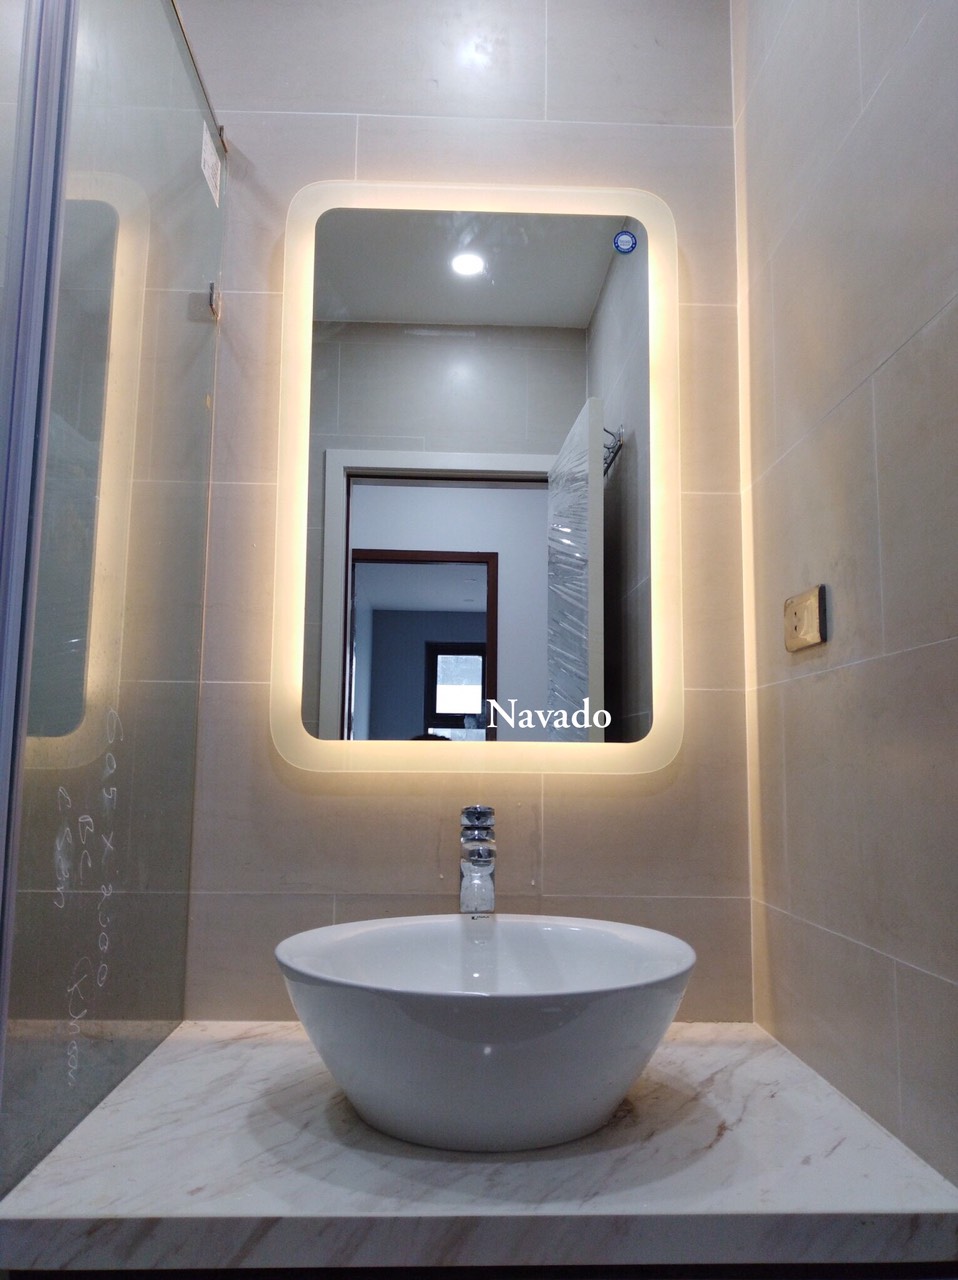 Gương phòng tắm led: Gương phòng tắm led thật sự là một bước đột phá trong ngành công nghiệp thiết bị vệ sinh. Với ánh sáng trắng tinh khiết, độ sáng điều chỉnh được và tính năng kết nối Bluetooth, gương phòng tắm led đã thay đổi hoàn toàn thế giới vệ sinh gia đình. Hãy cùng khám phá những gương phòng tắm led đầy sáng tạo và ấn tượng.